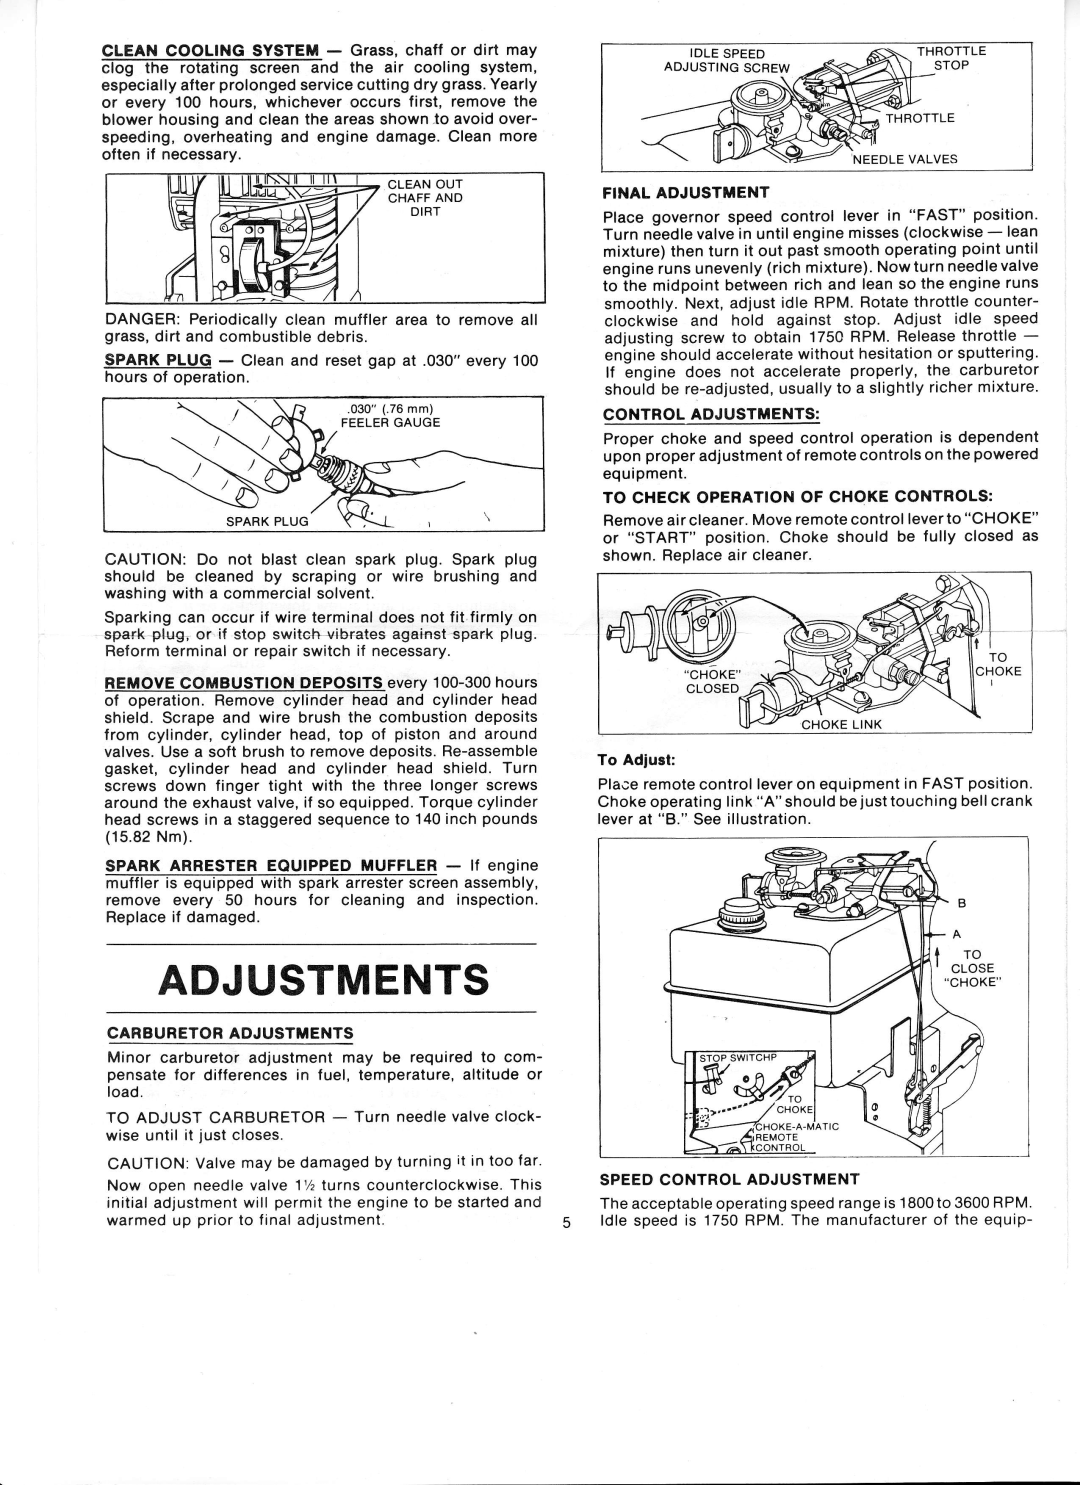 Ward's GIL-39012B manual Adjustments 